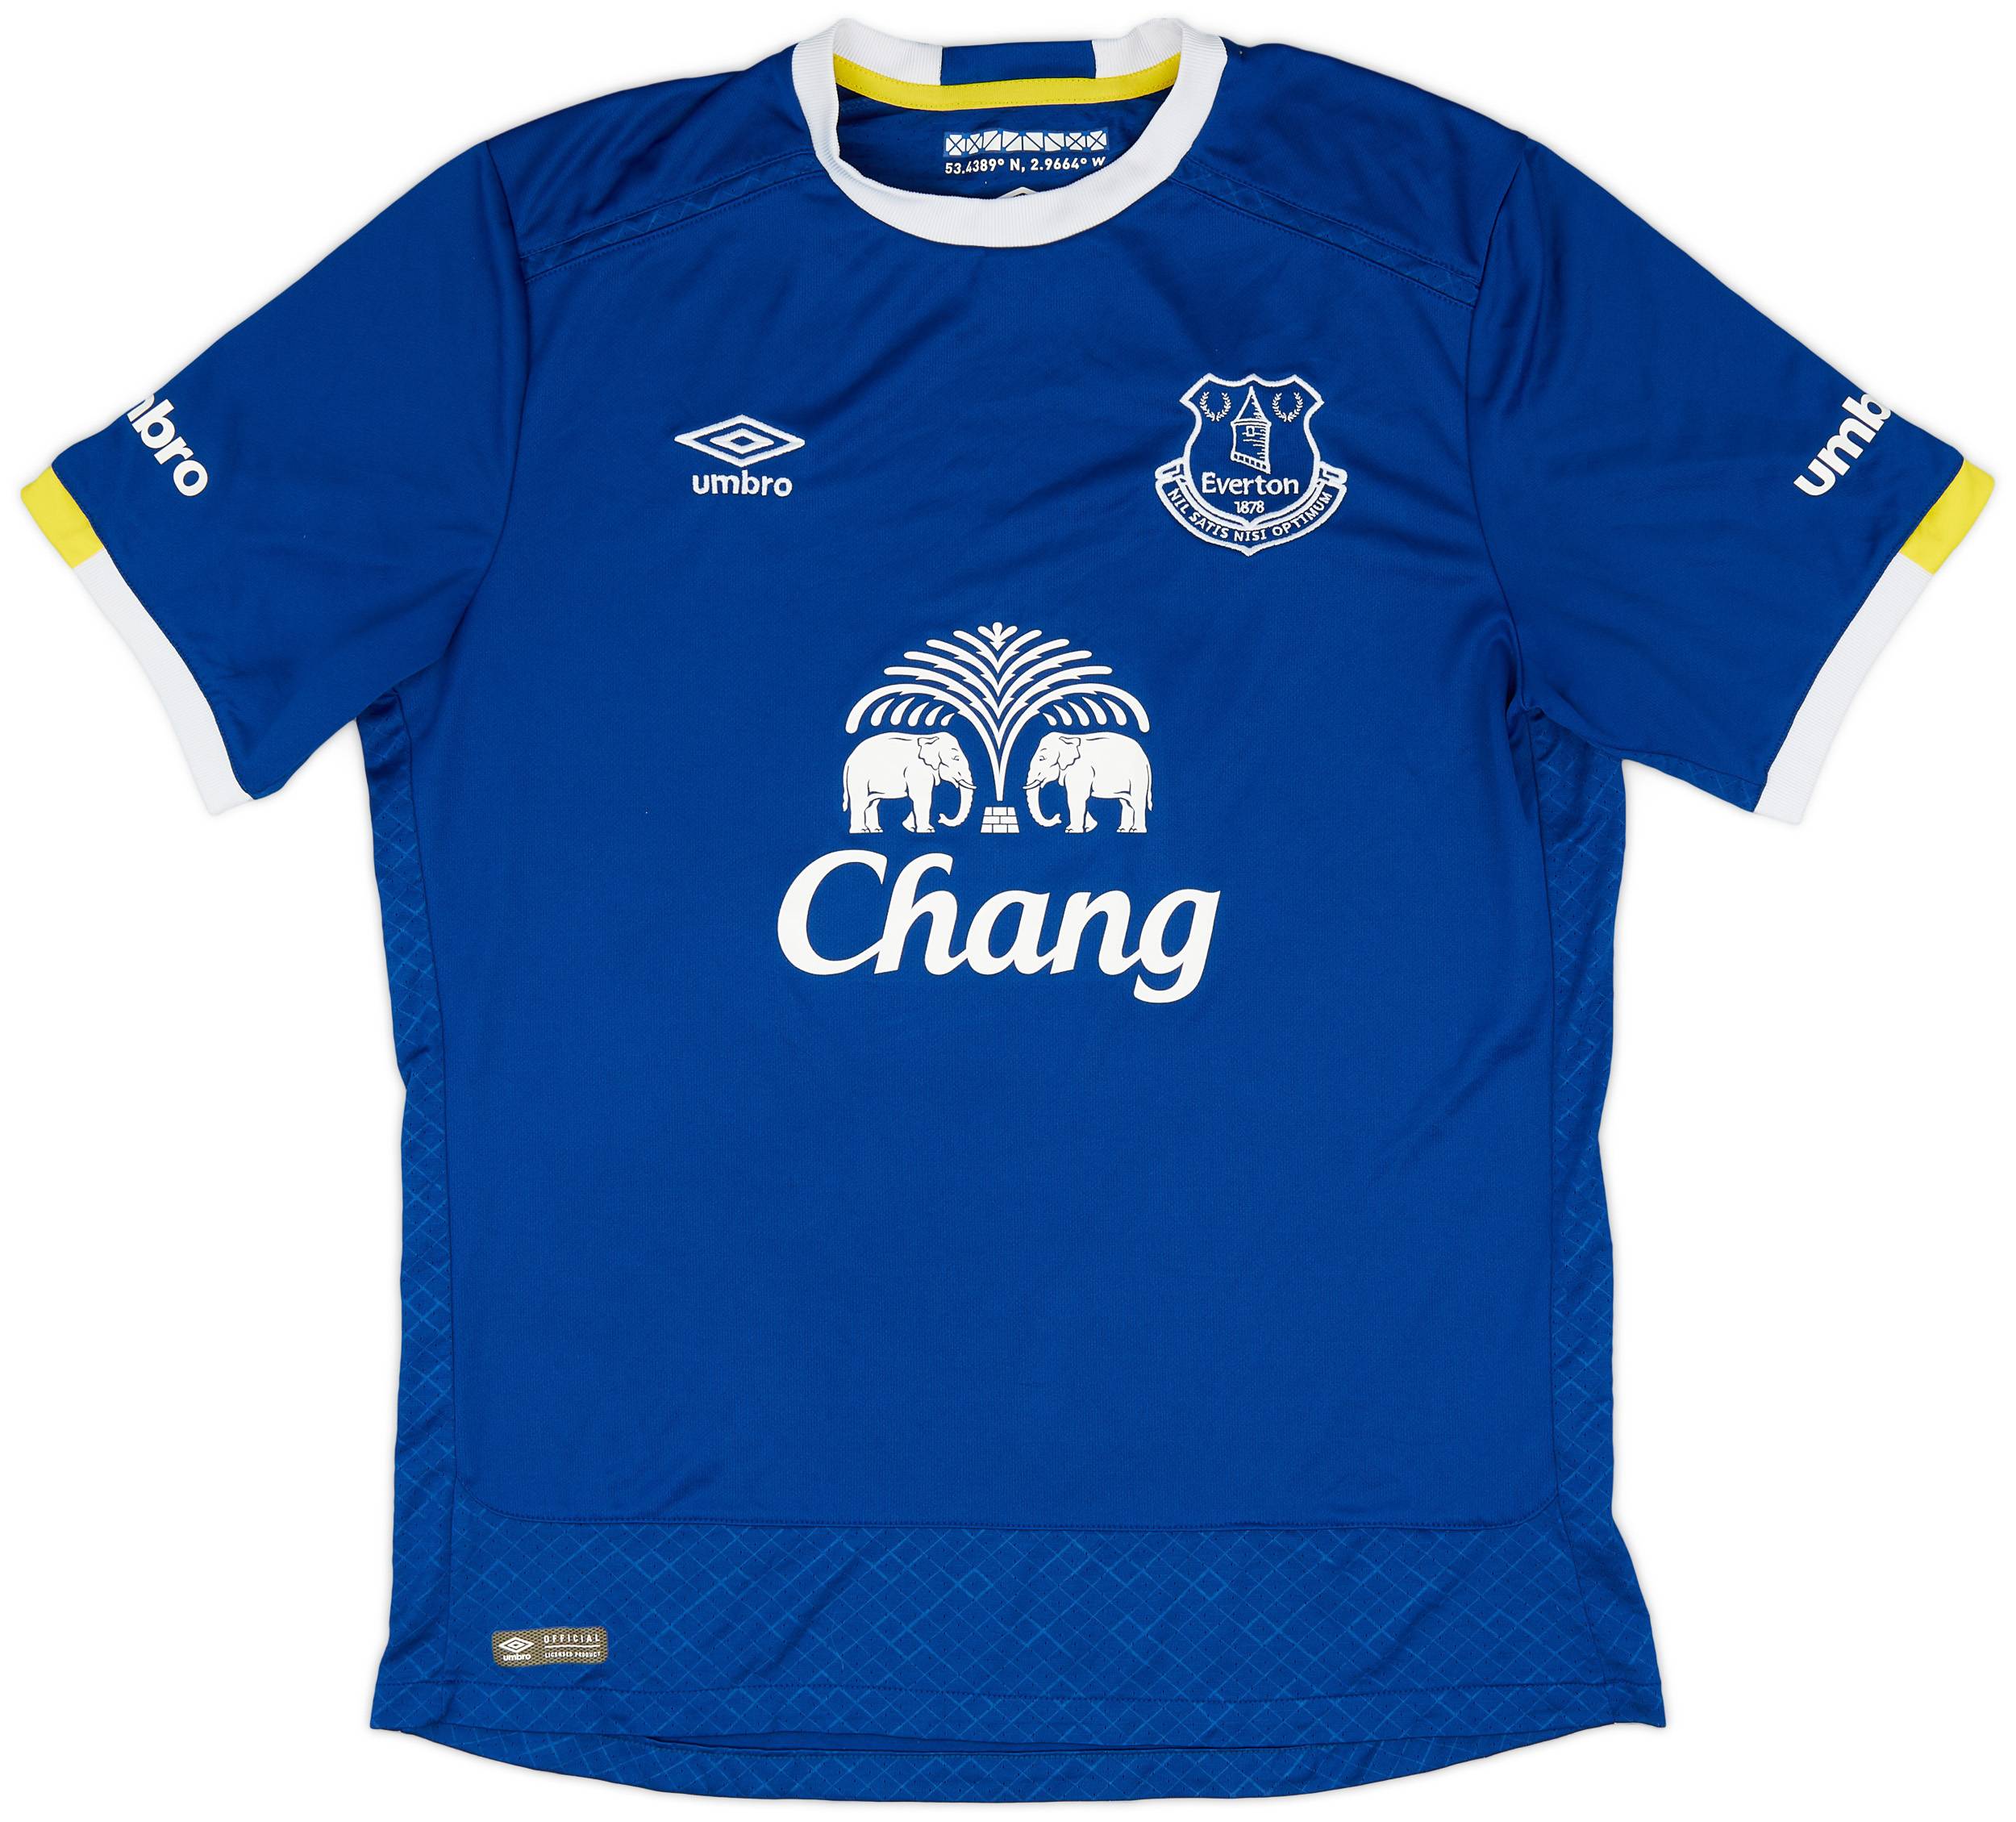 2016-17 Everton Home Shirt - 9/10 - (Women's XL)